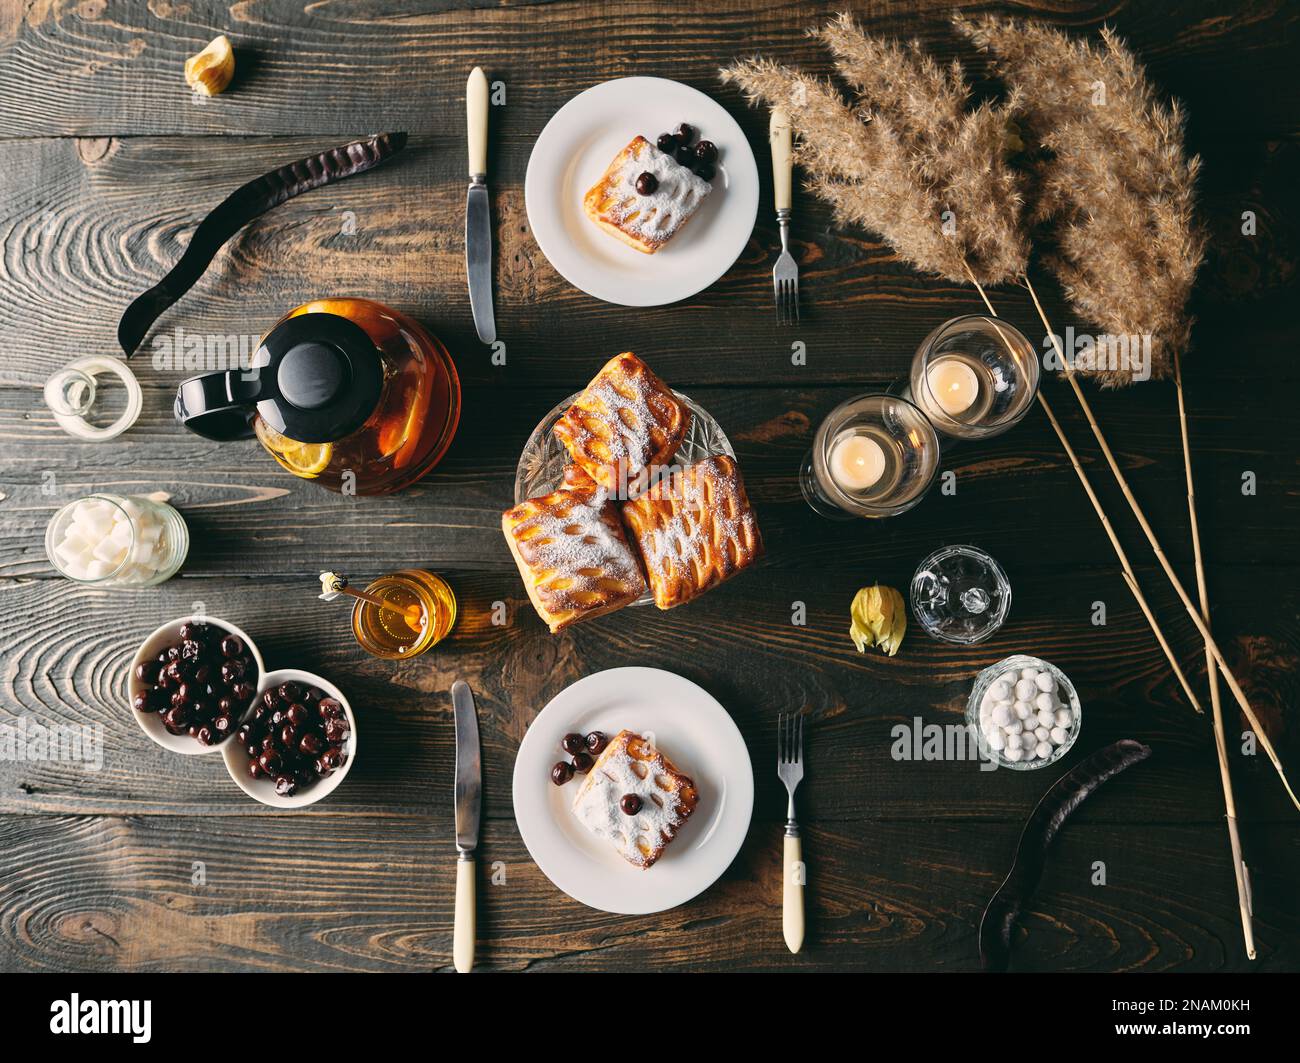 Vista dall'alto del tavolo splendidamente servito decorato in stile rustico con dolci fatti in casa, teiera e candele. Casa accogliente, tempo del tè, cena romantica, cibo Foto Stock